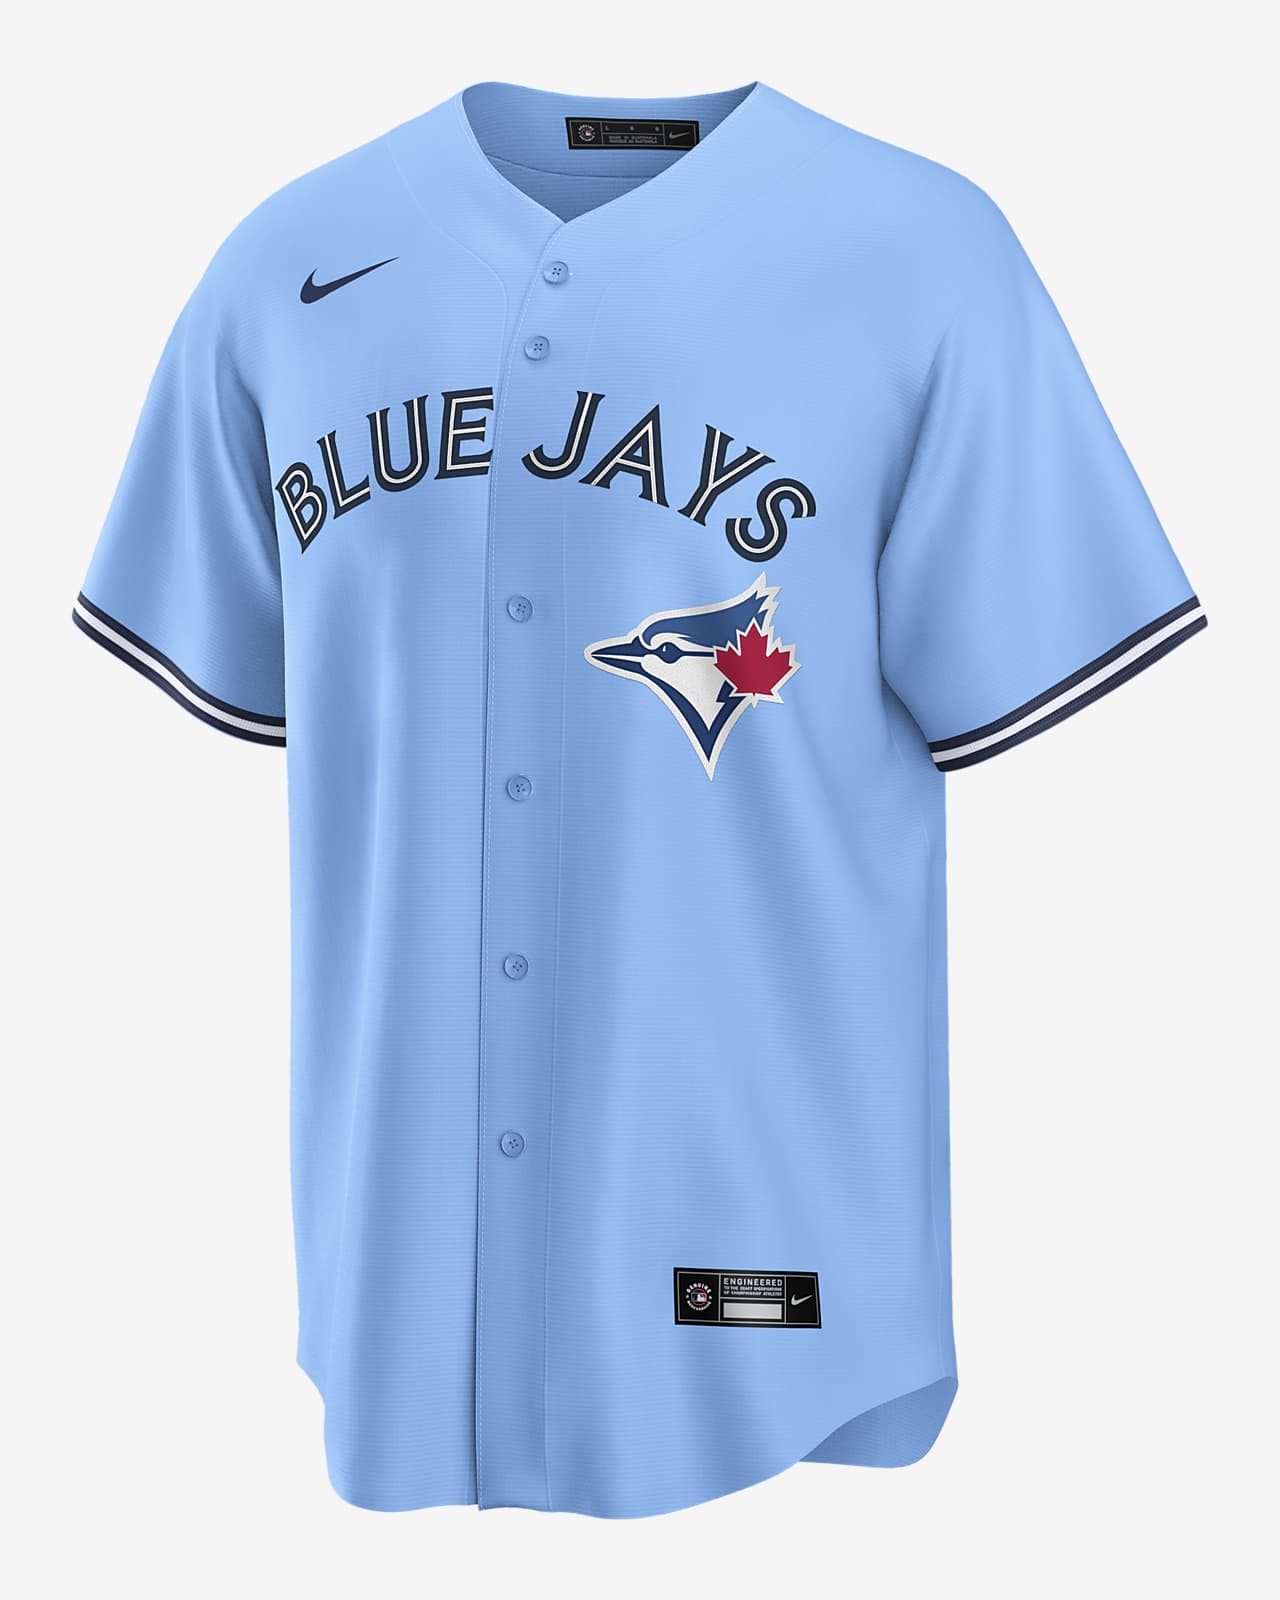 MLB Toronto Blue Jays (Vladimir Guerrero Jr.) Men's Replica Baseball Jersey